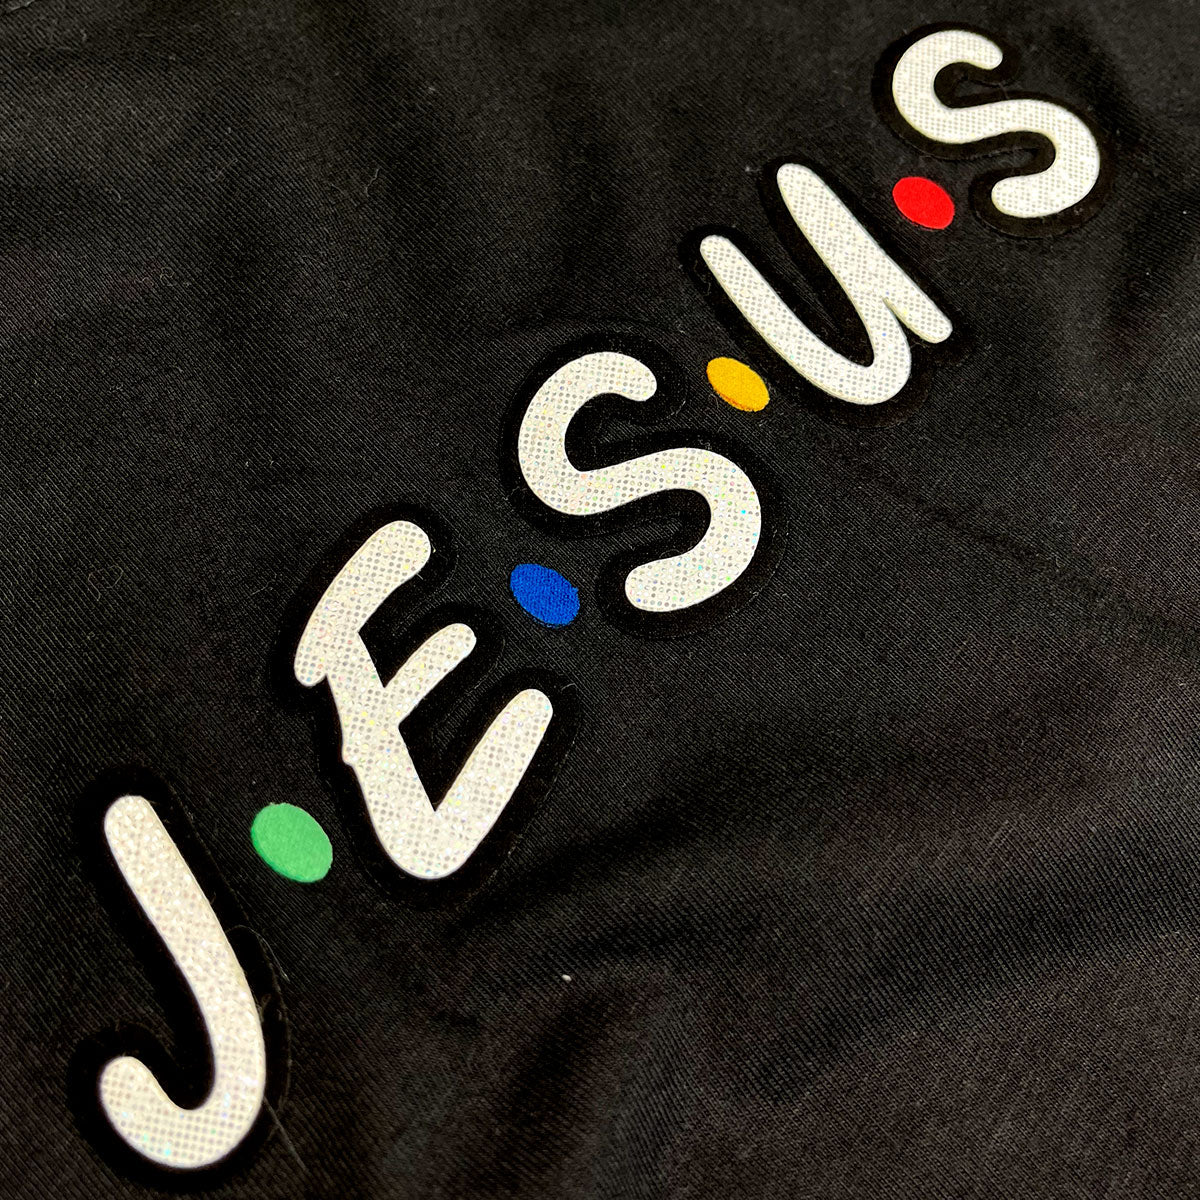 Camiseta Masculina Preta Aplique J.E.S.U.S